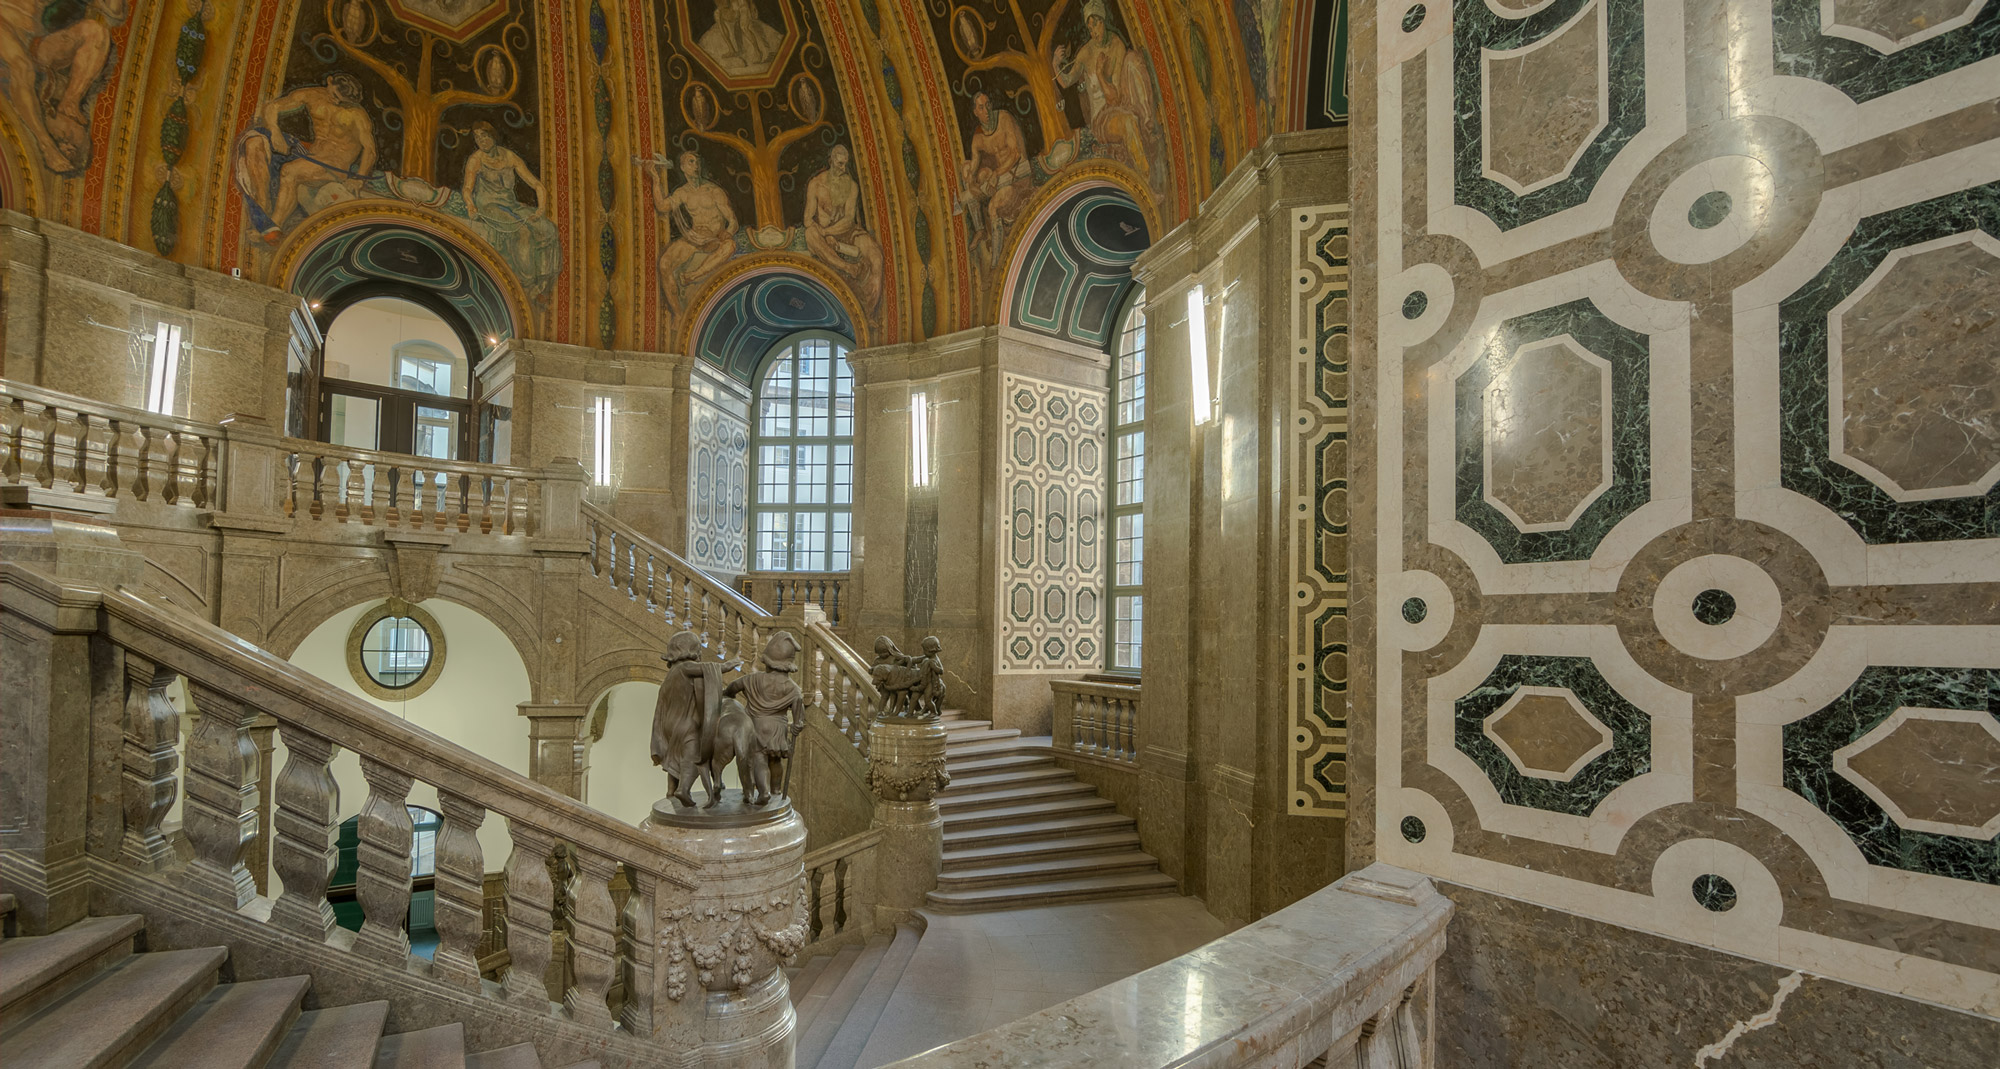 Raumimpression mit Mosaikfläche - Neues Rathaus Dresden